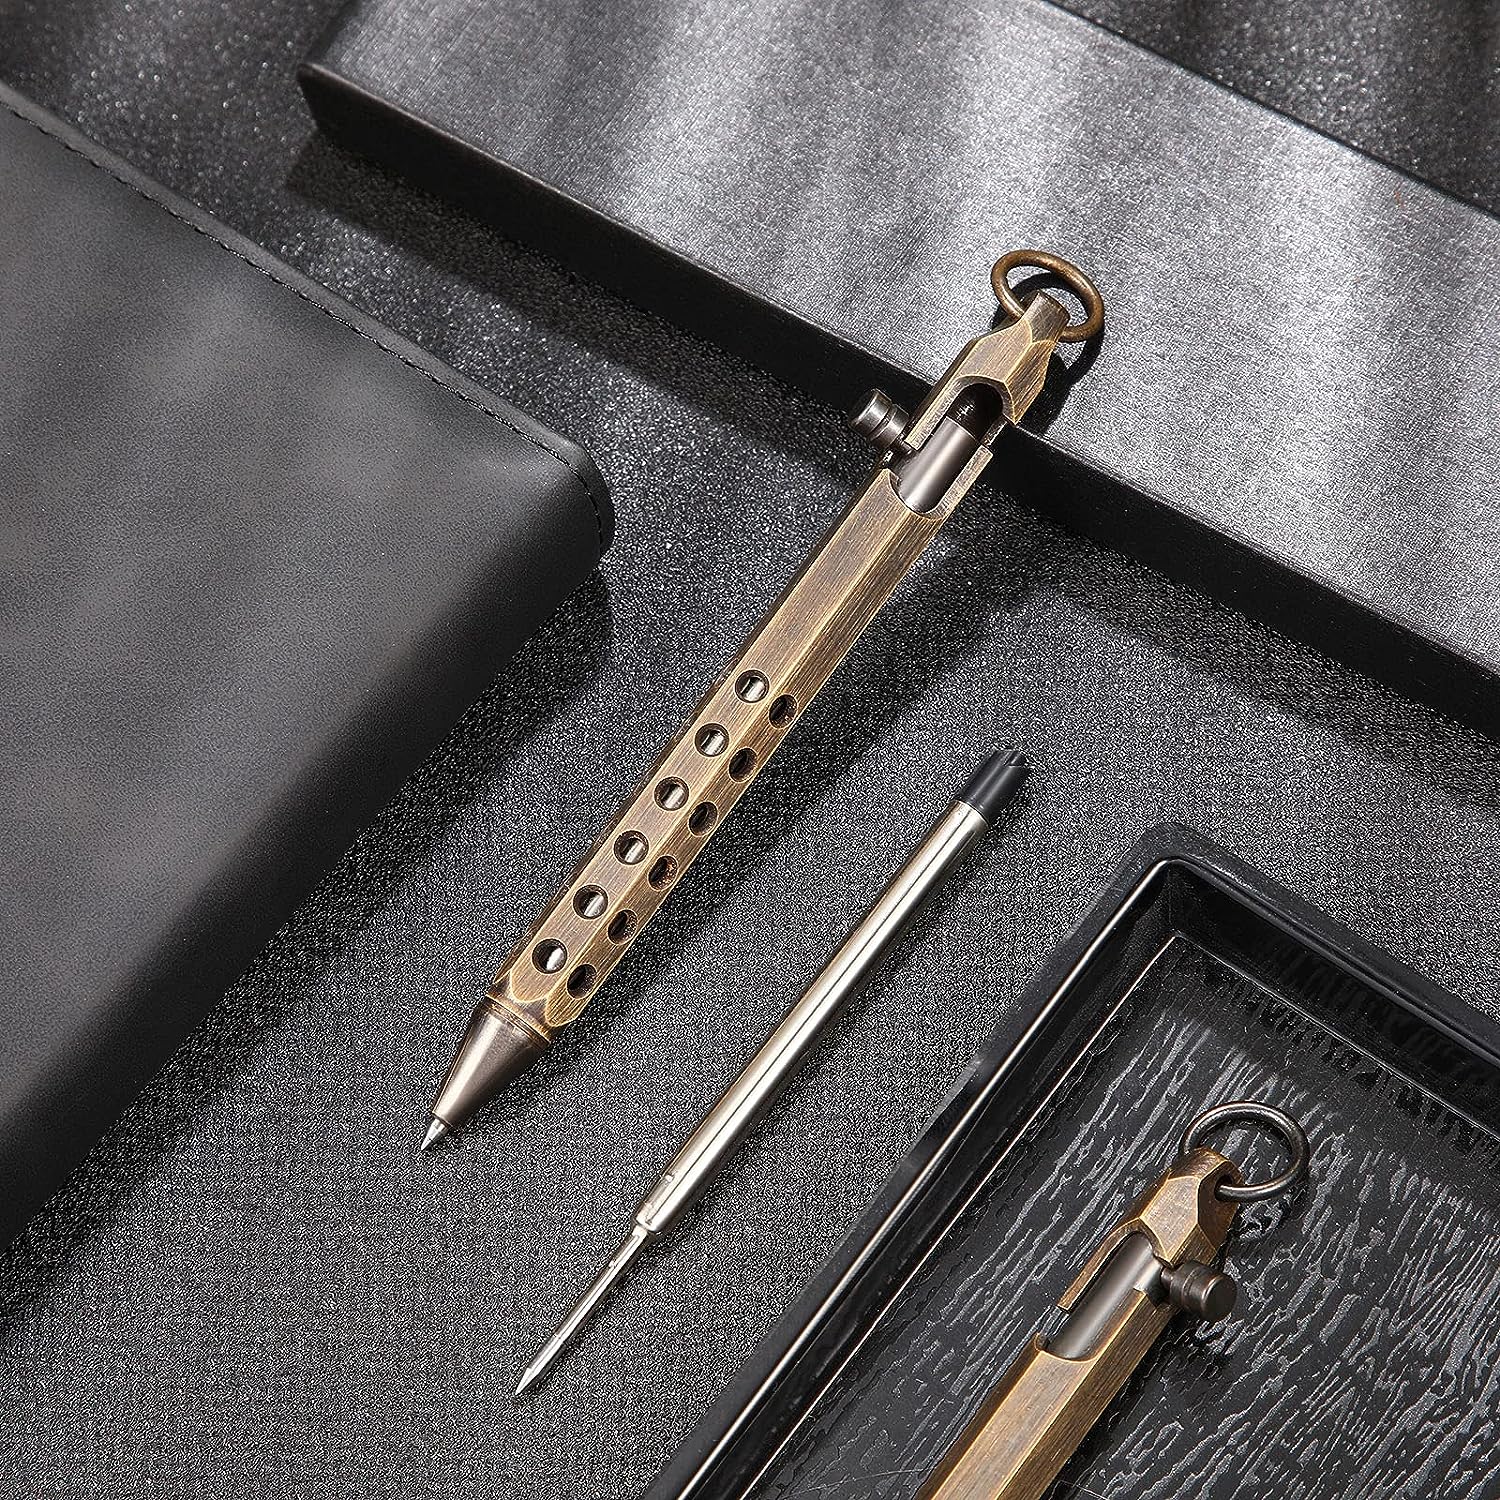 Handmade Brass Pen Creative Retro Hexagonal Brass Pen for Signature, Office Supplies, and Business Gifts